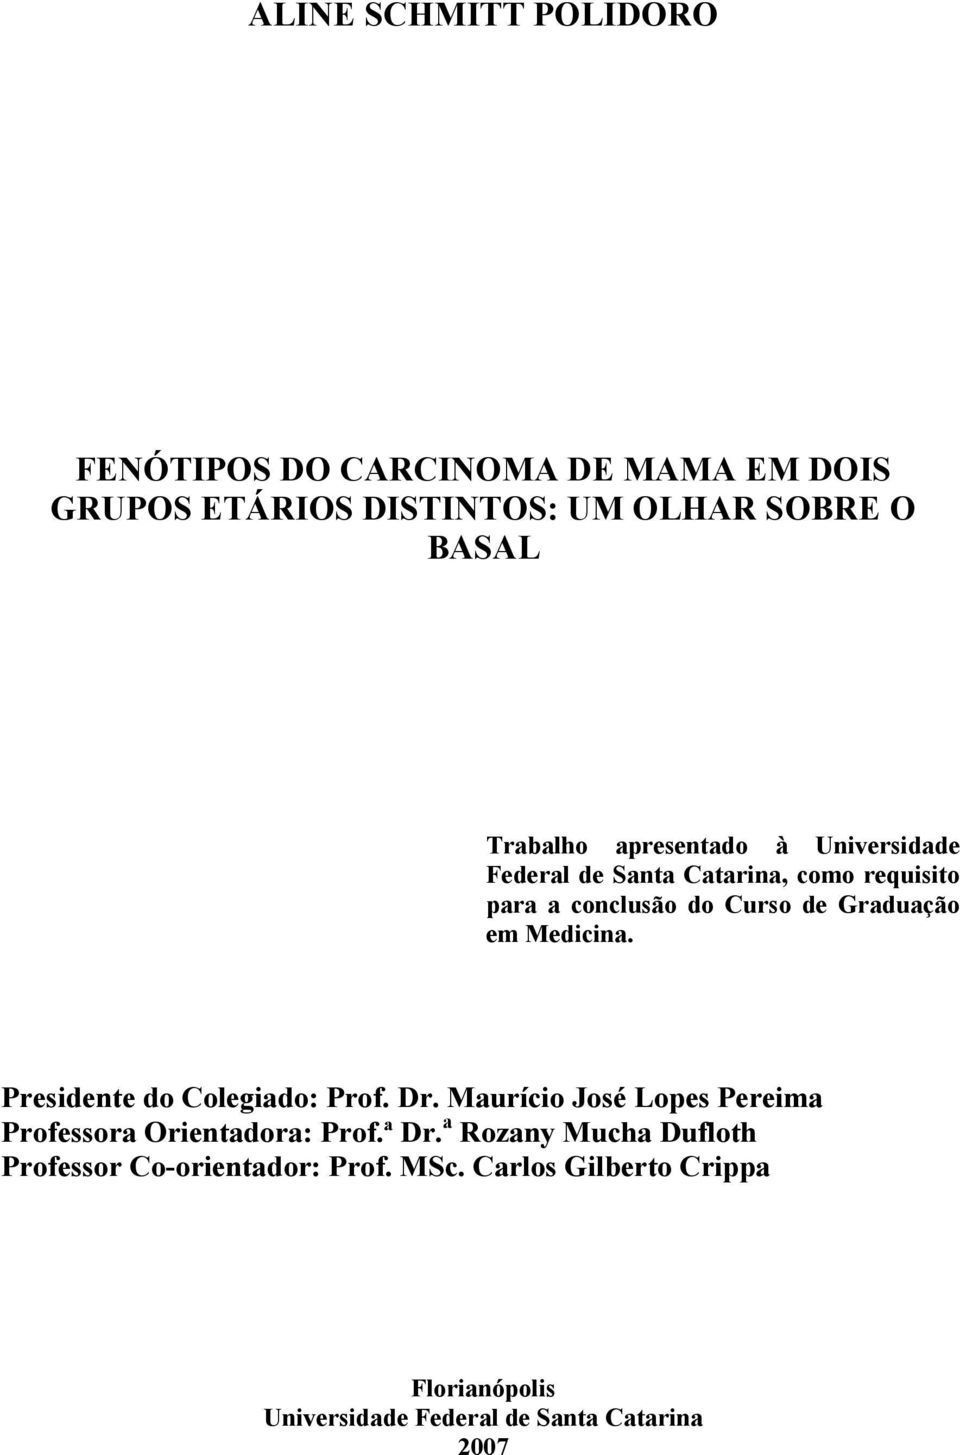 Presidente do Colegiado: Prof. Dr. Maurício José Lopes Pereima Professora Orientadora: Prof.ª Dr.